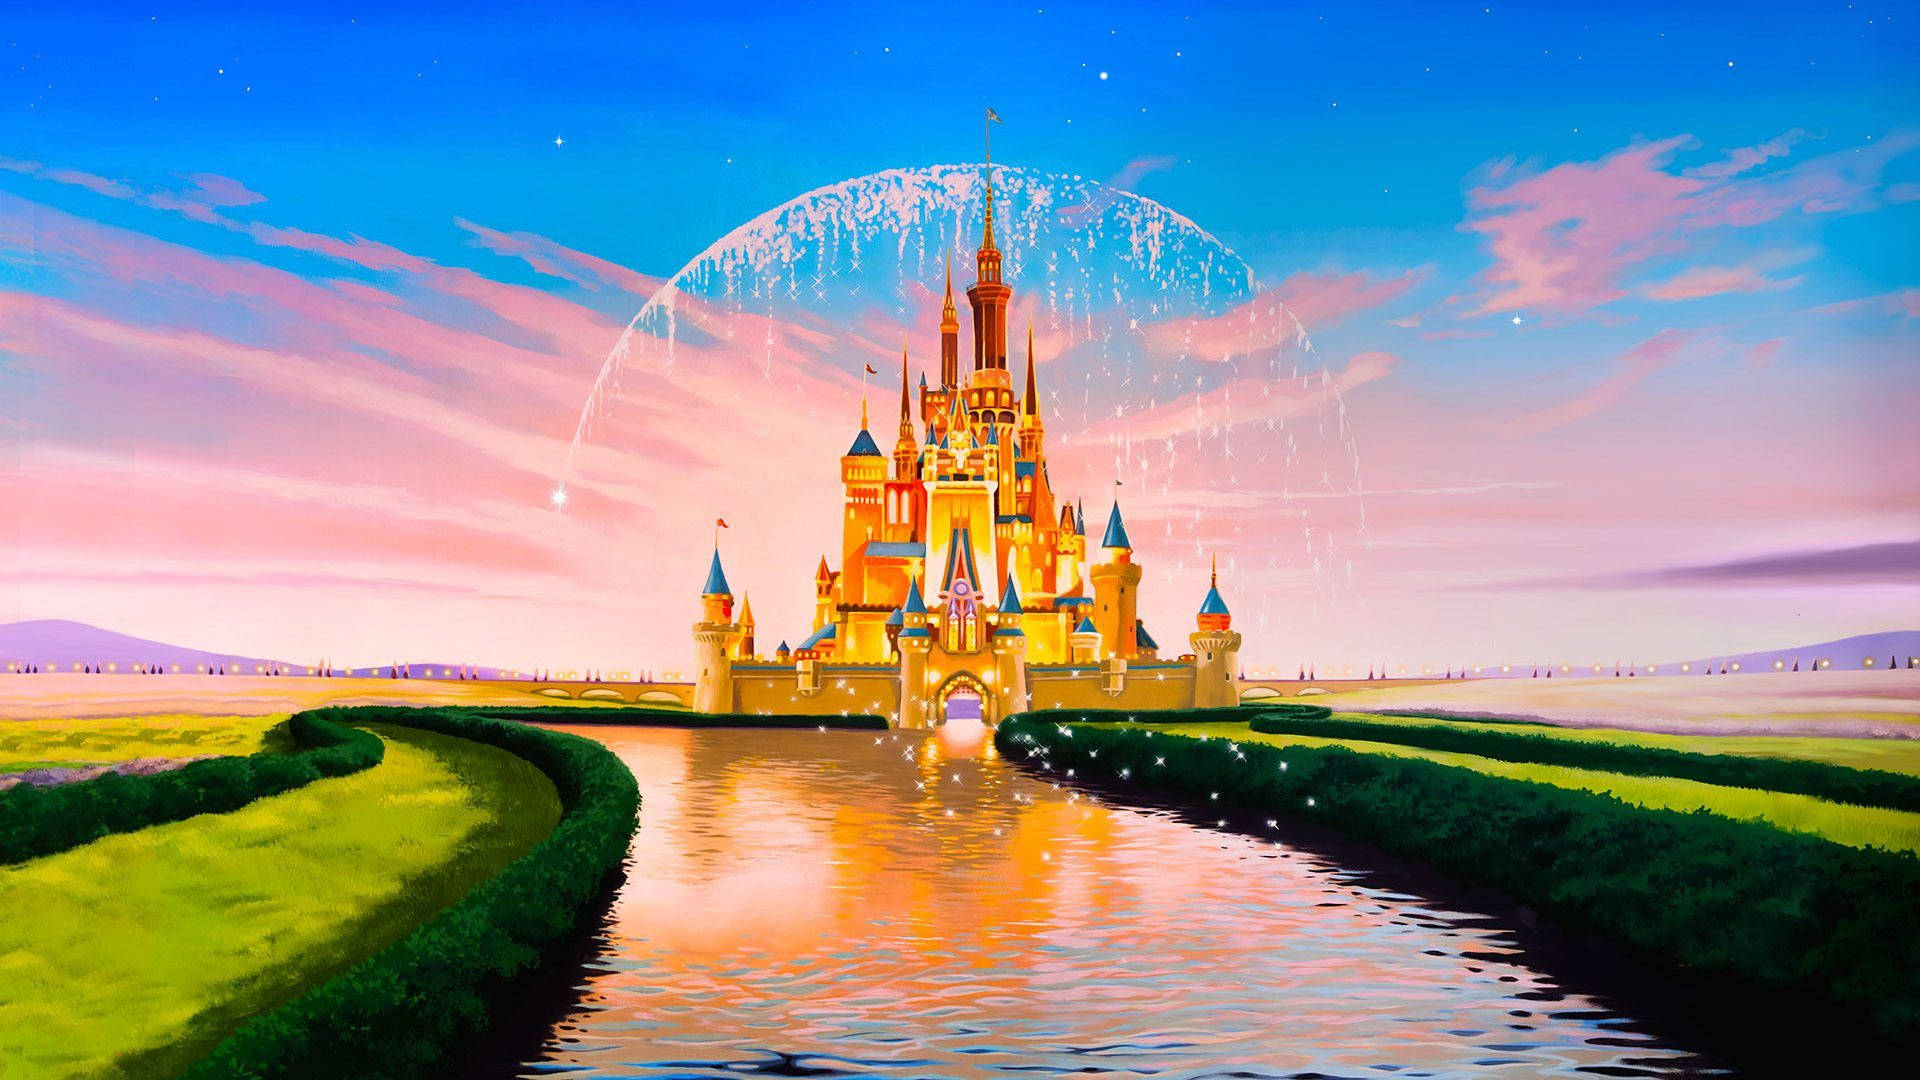 Colorful Disney Castle Laptop Wallpaper